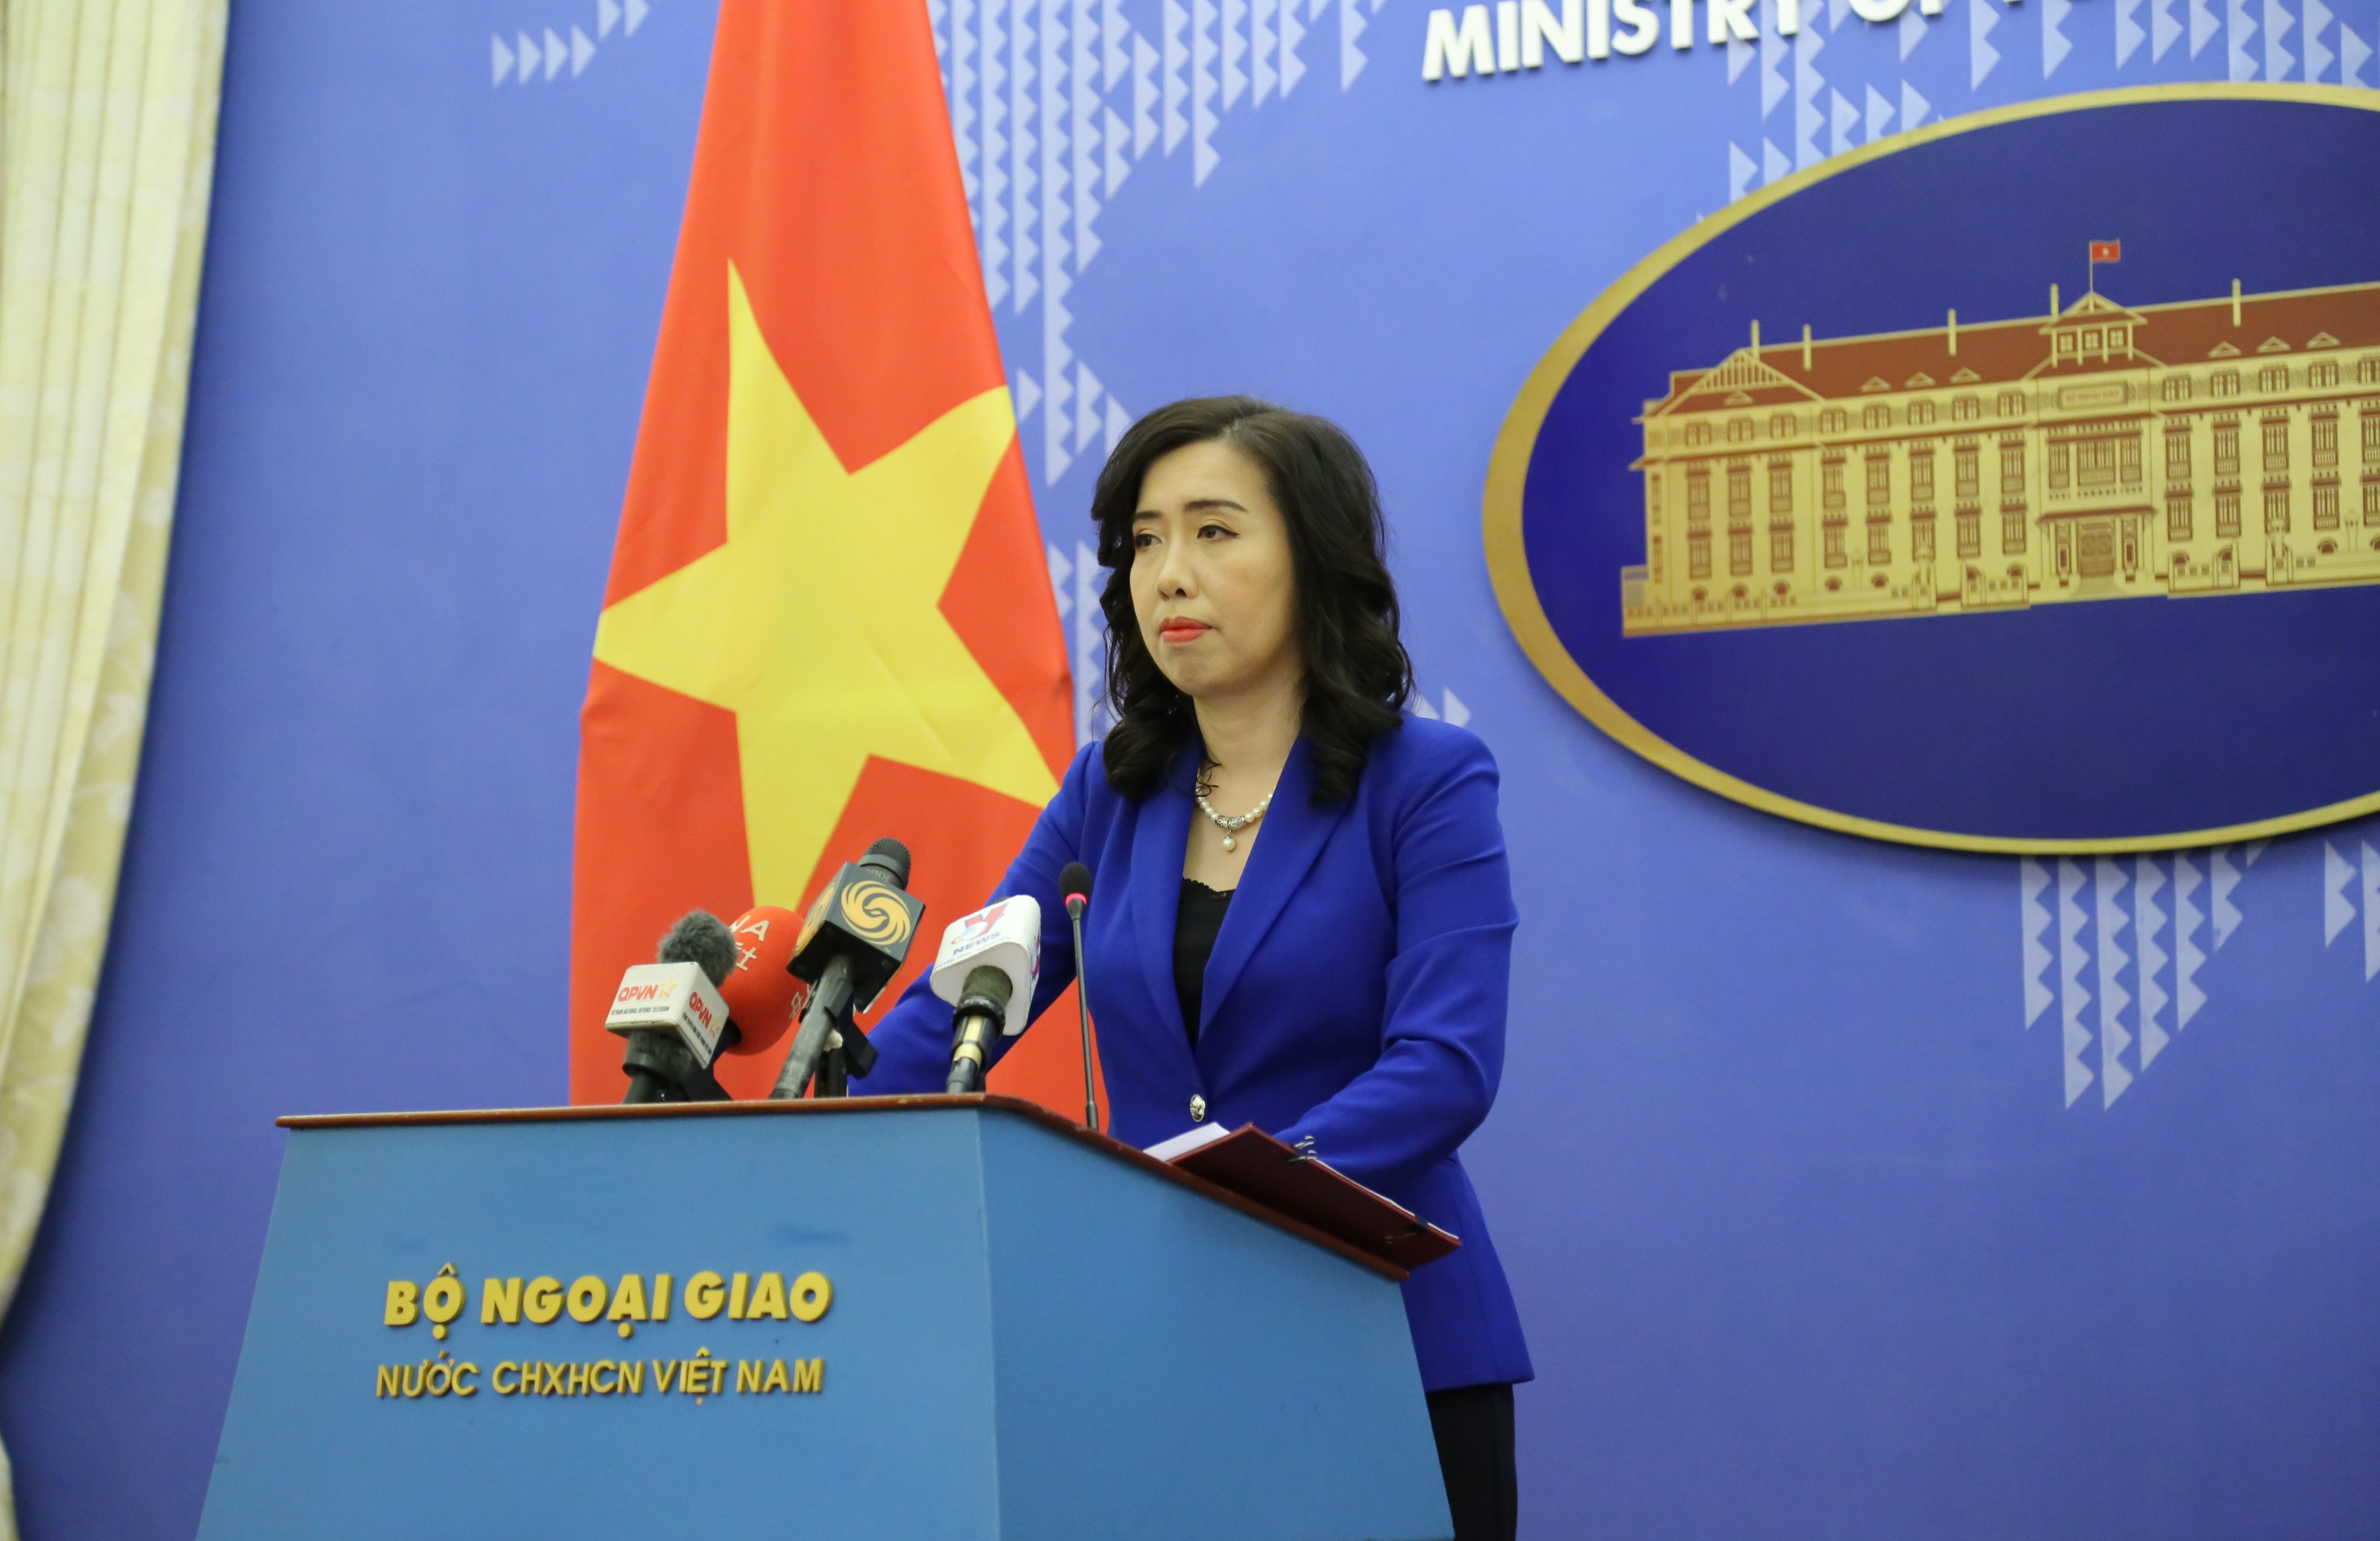 Chính phủ Việt Nam hết sức quan tâm đến vấn đề người lao động Việt Nam bị lừa đảo, môi giới lao động bất hợp pháp tại Campuchia